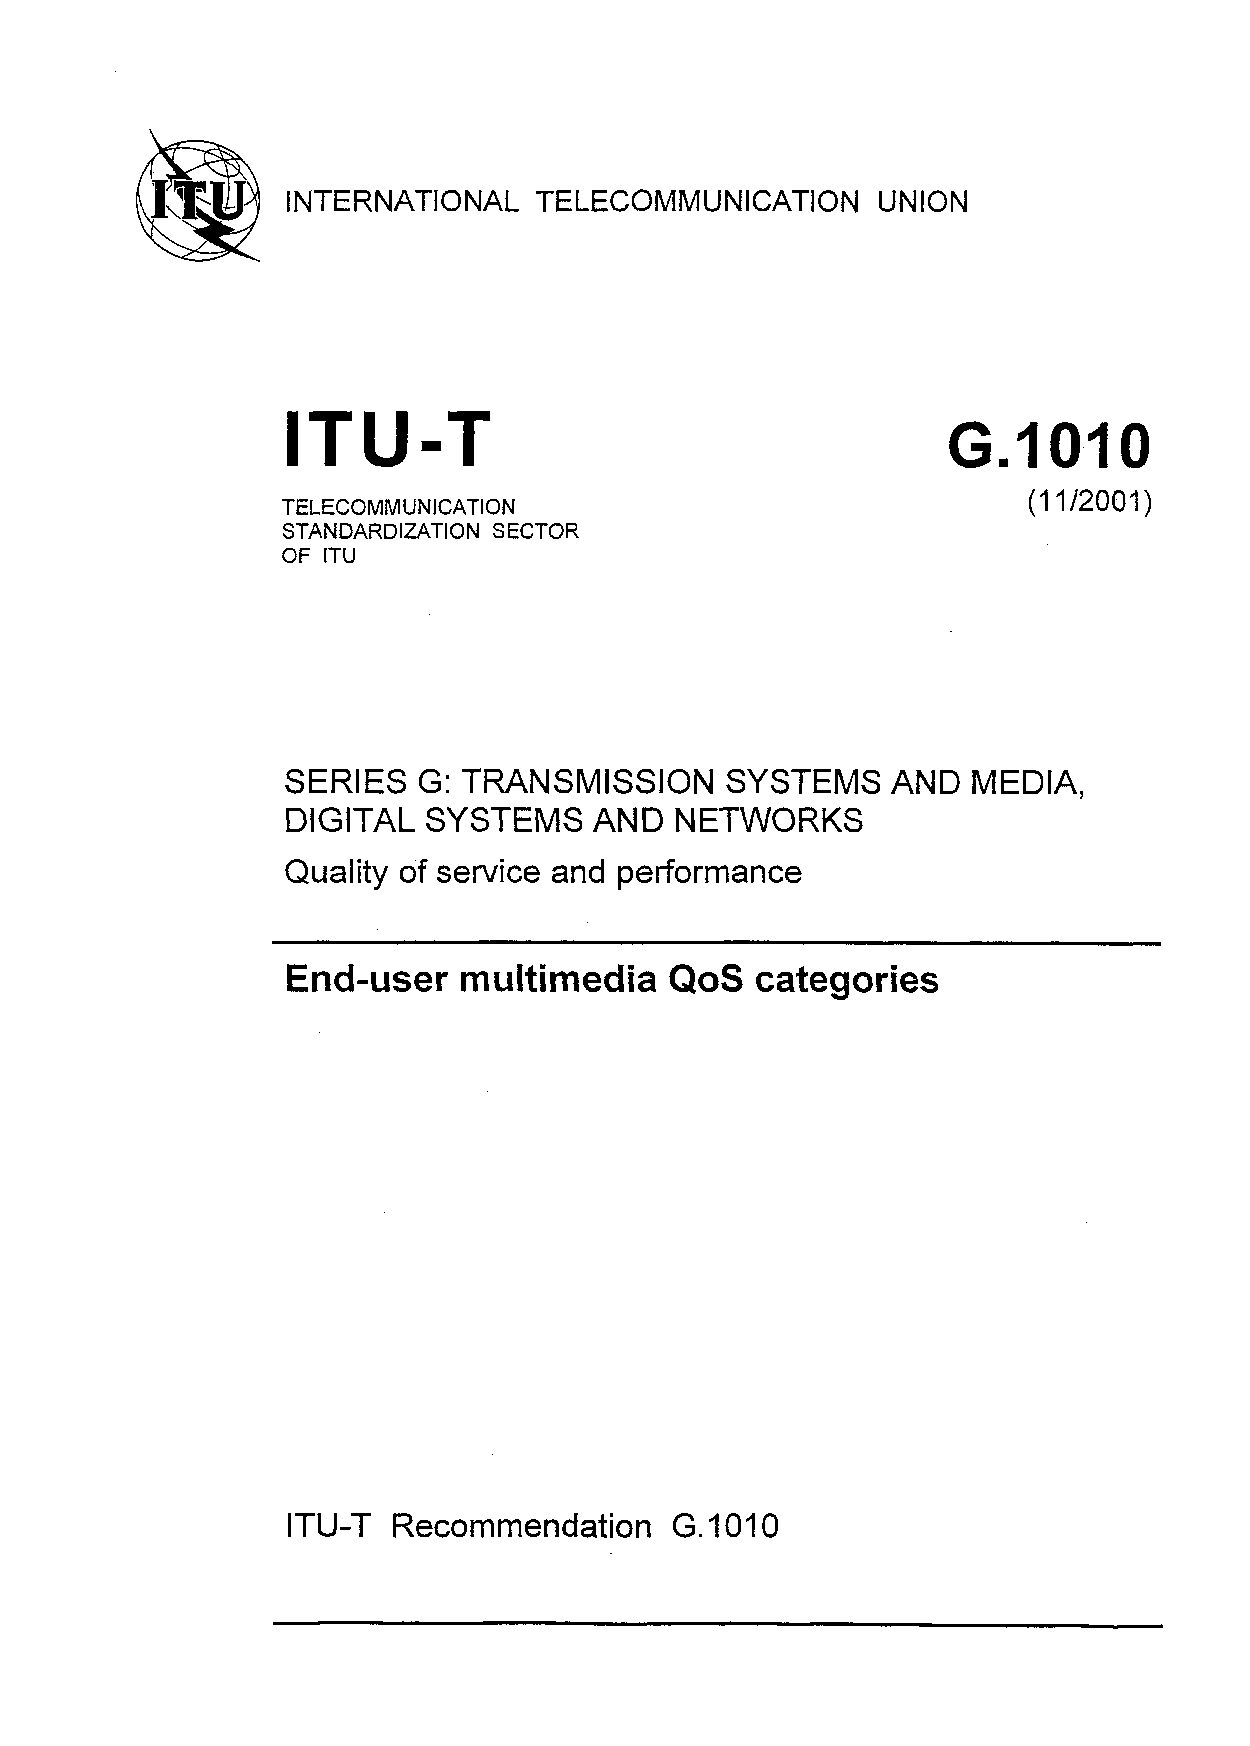 ITU-T G.1010-2001